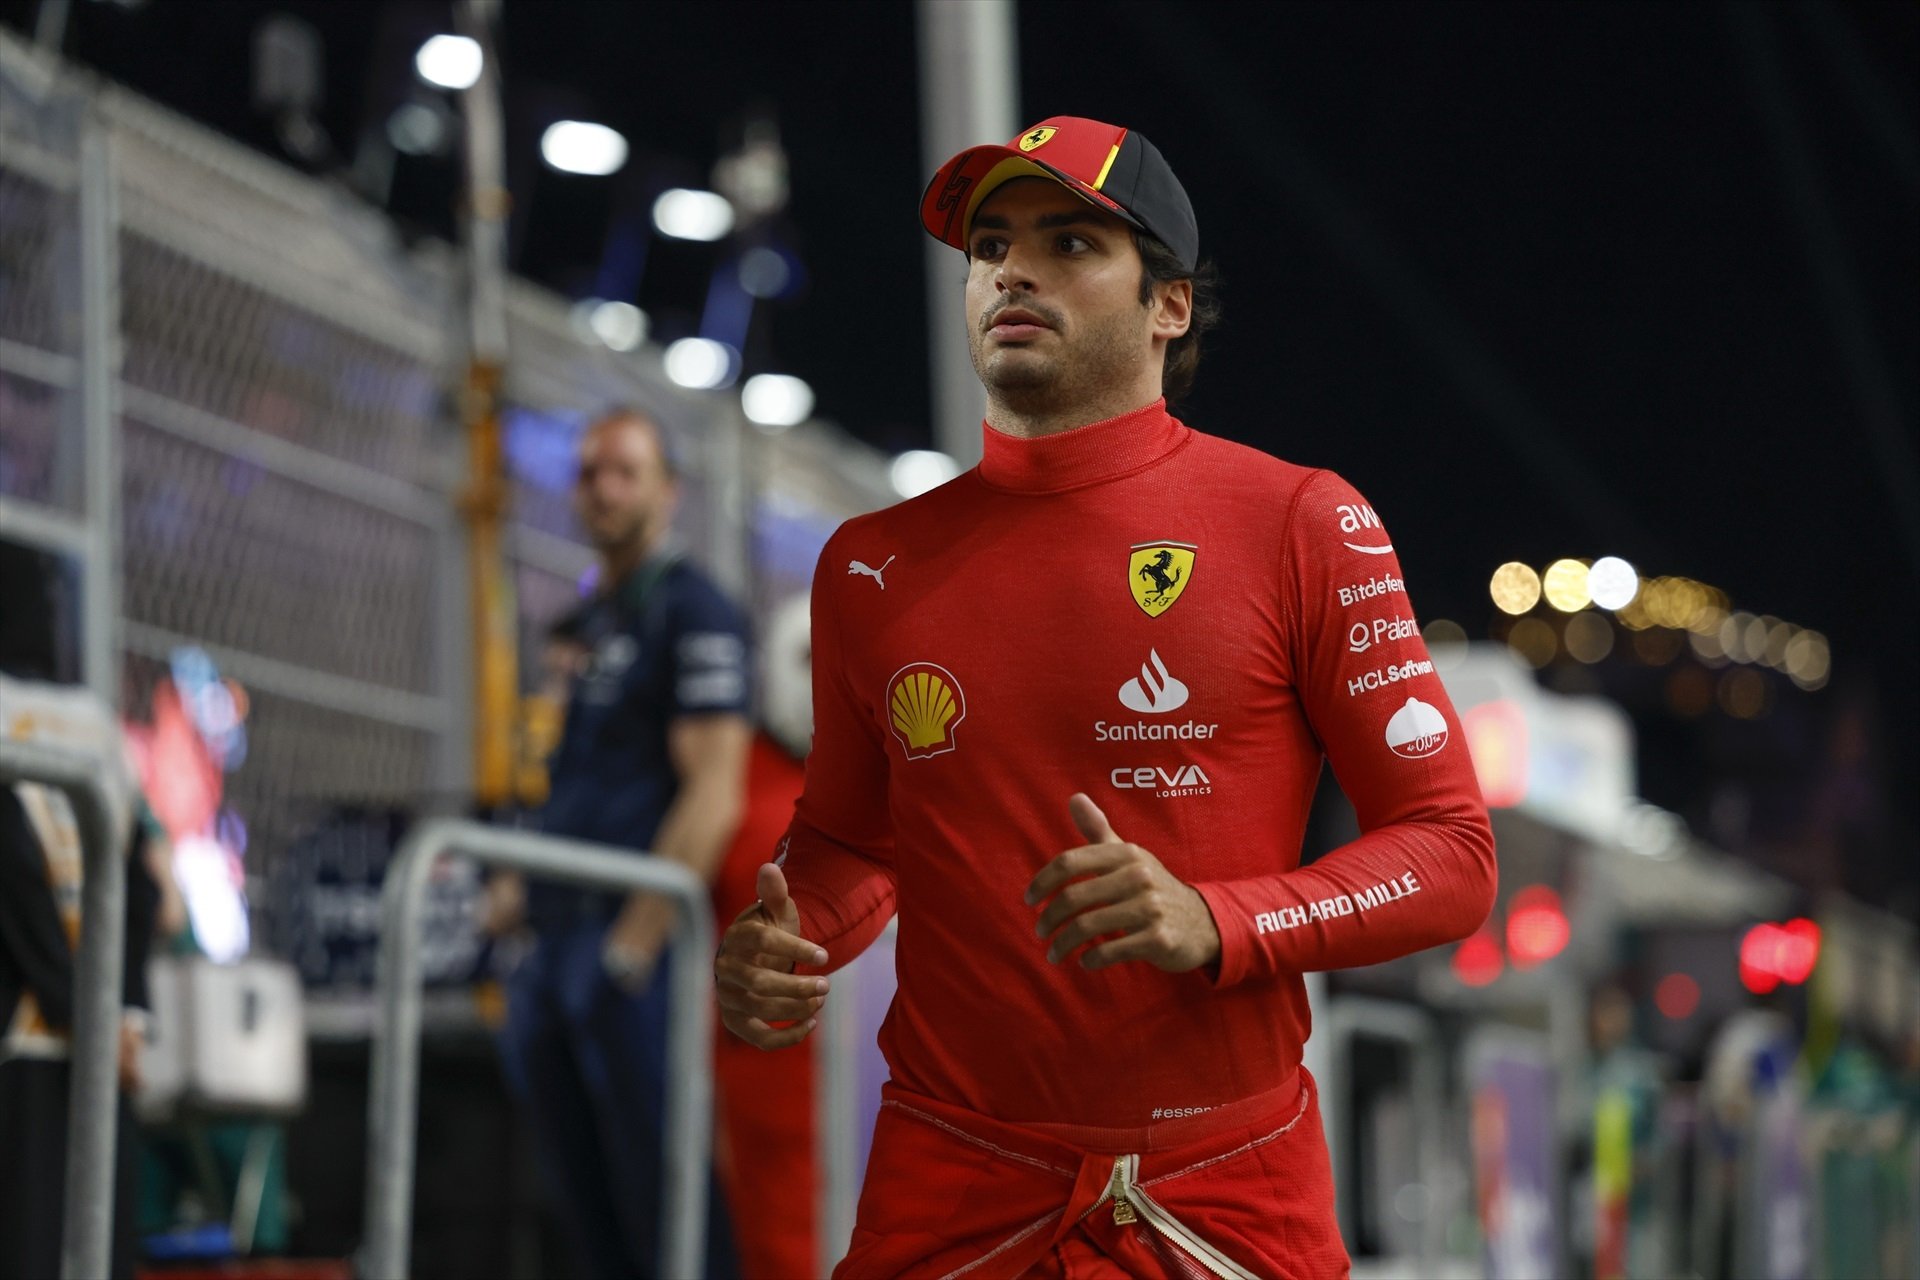 Ferrari, rechazado, el elegido para cargarse a Carlos Sainz ha dicho “no”